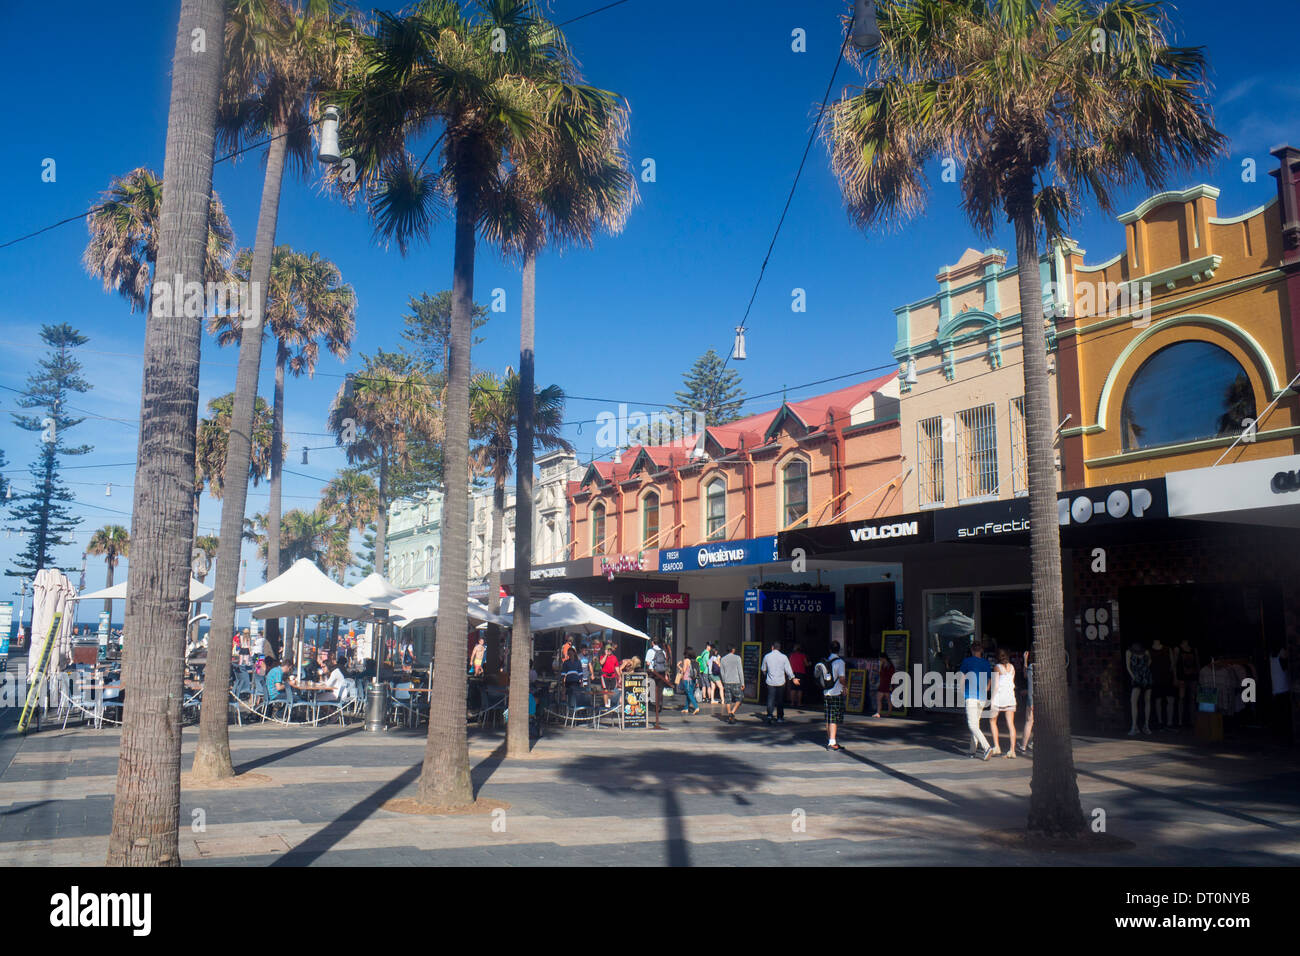 Der Corso Manly Sydney New South Wales NSW Australia Pelm Bäume Passanten Menschen an Café-Tischen Stockfoto